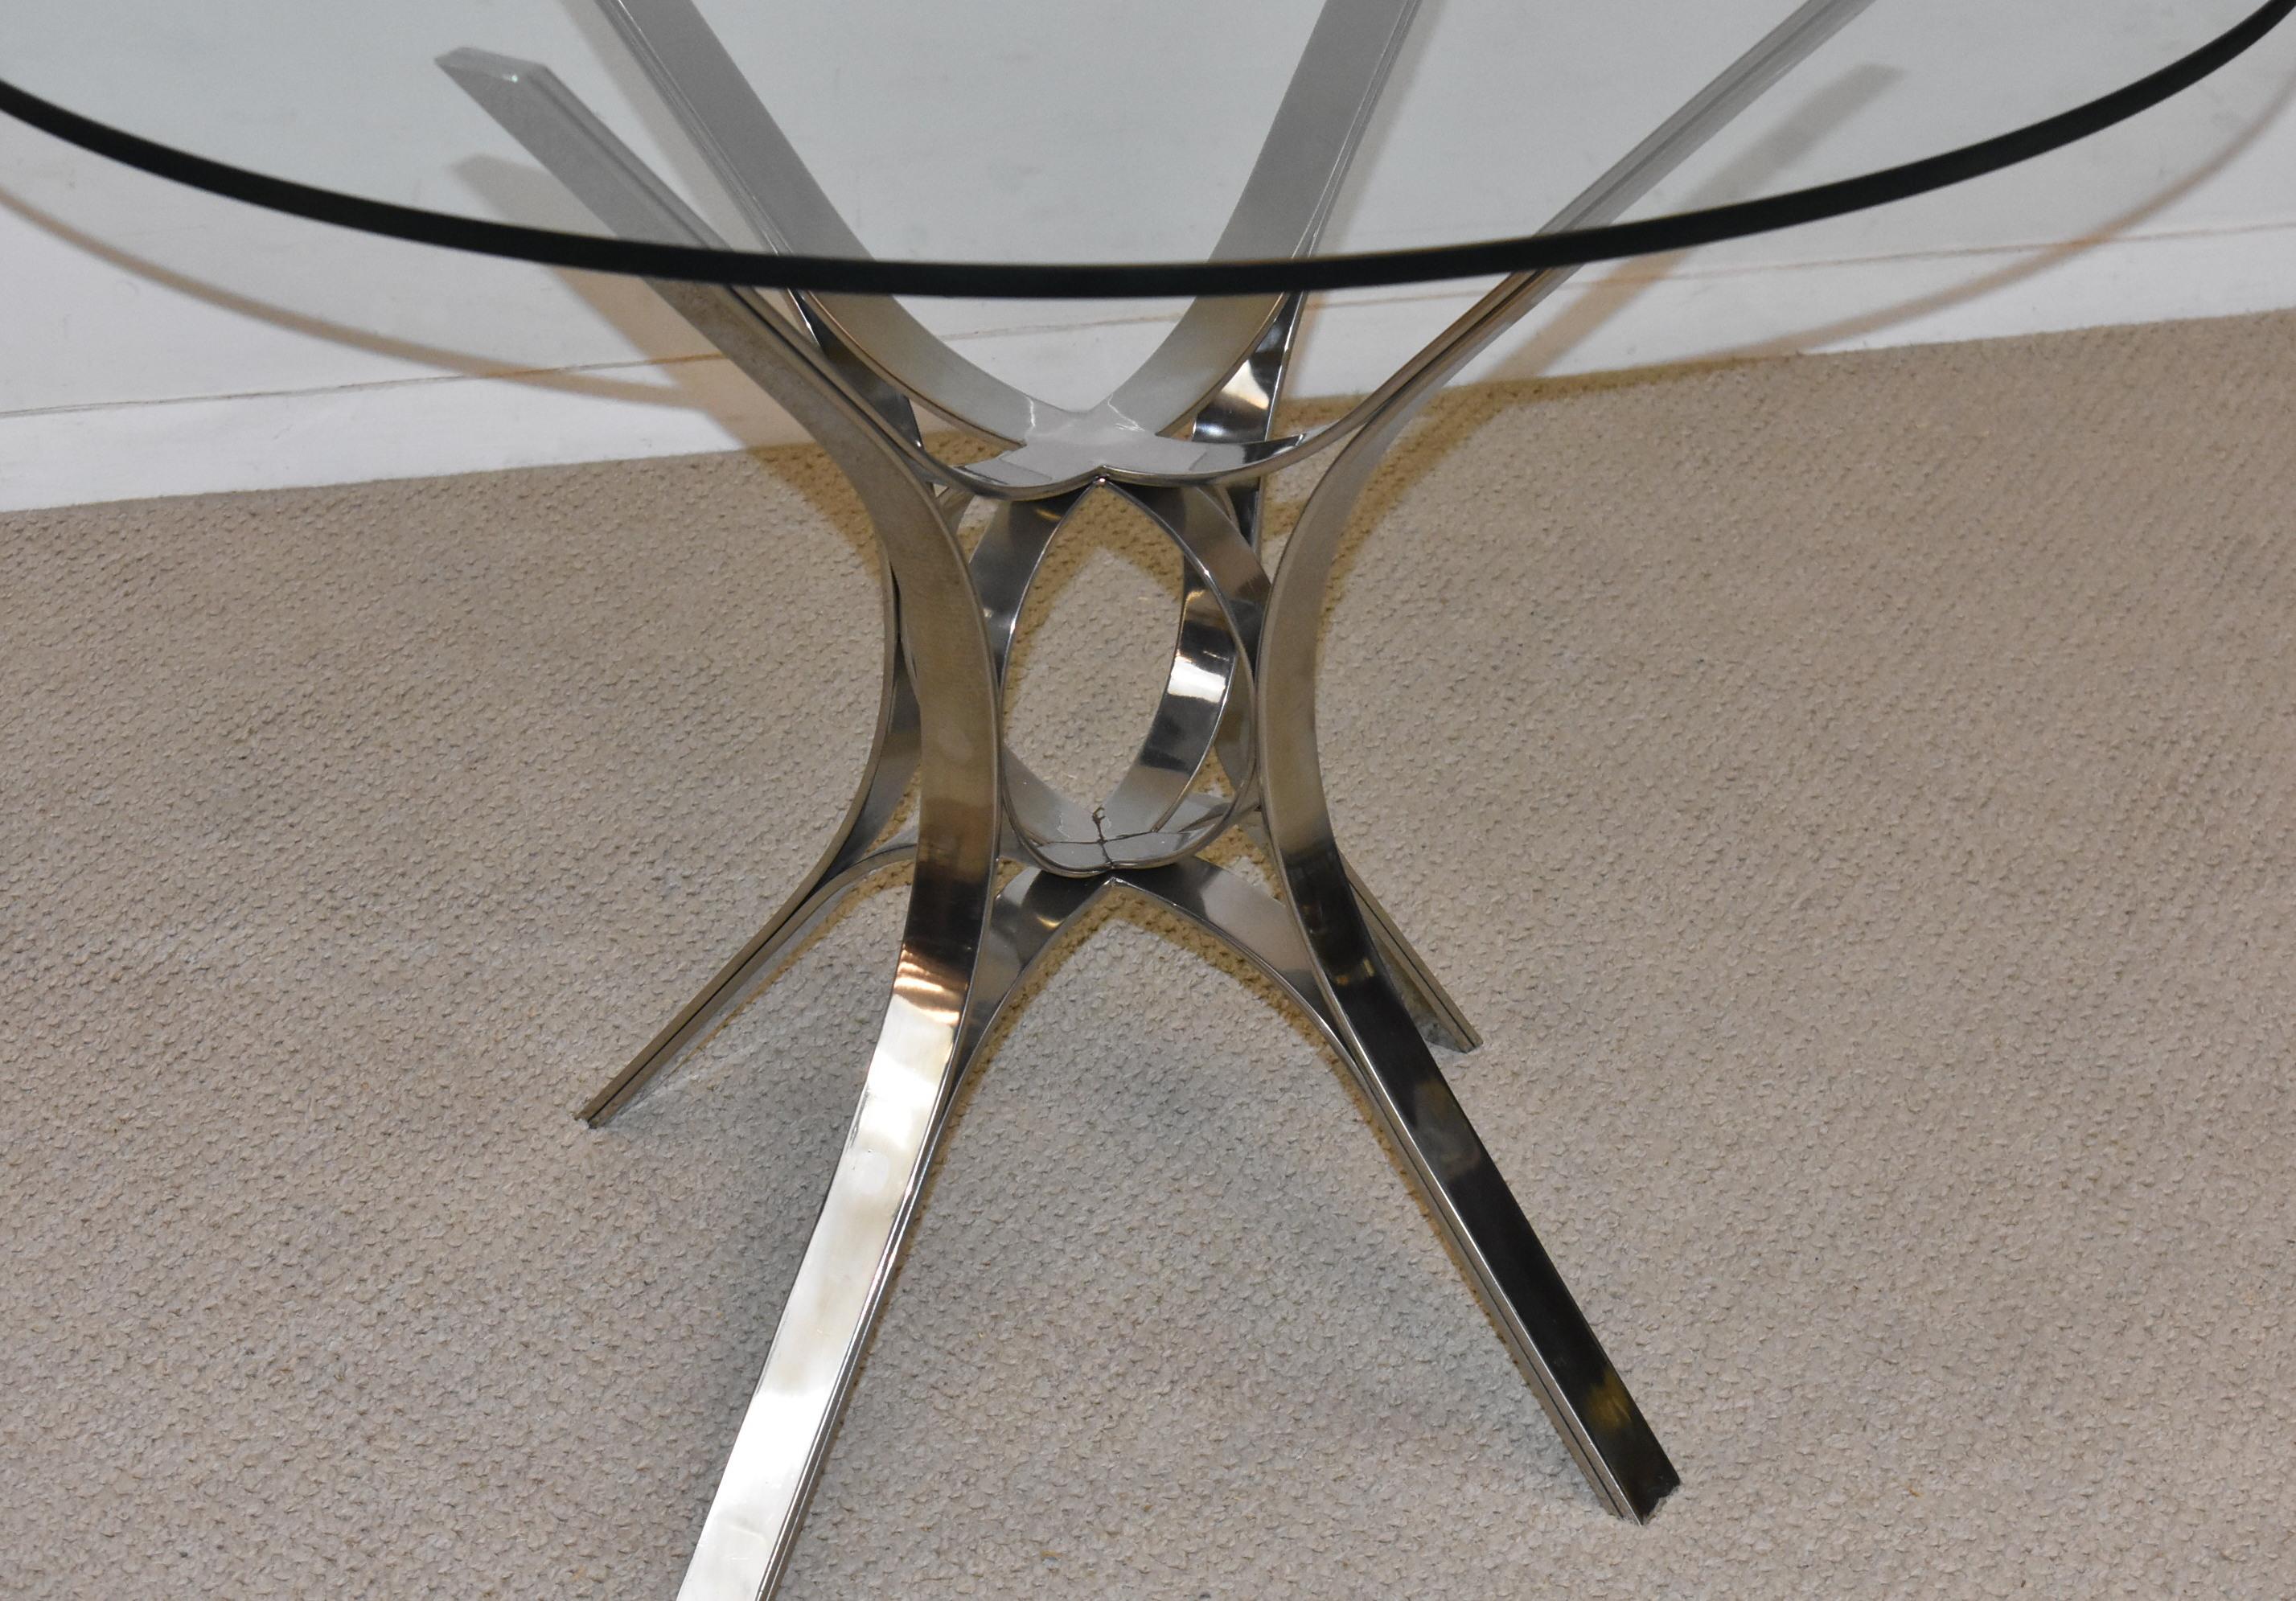 Runder Tisch aus Chrom und Glas von Roger Sprunger für Dunbar mit flacher Stange. Das Glas ist 0,5